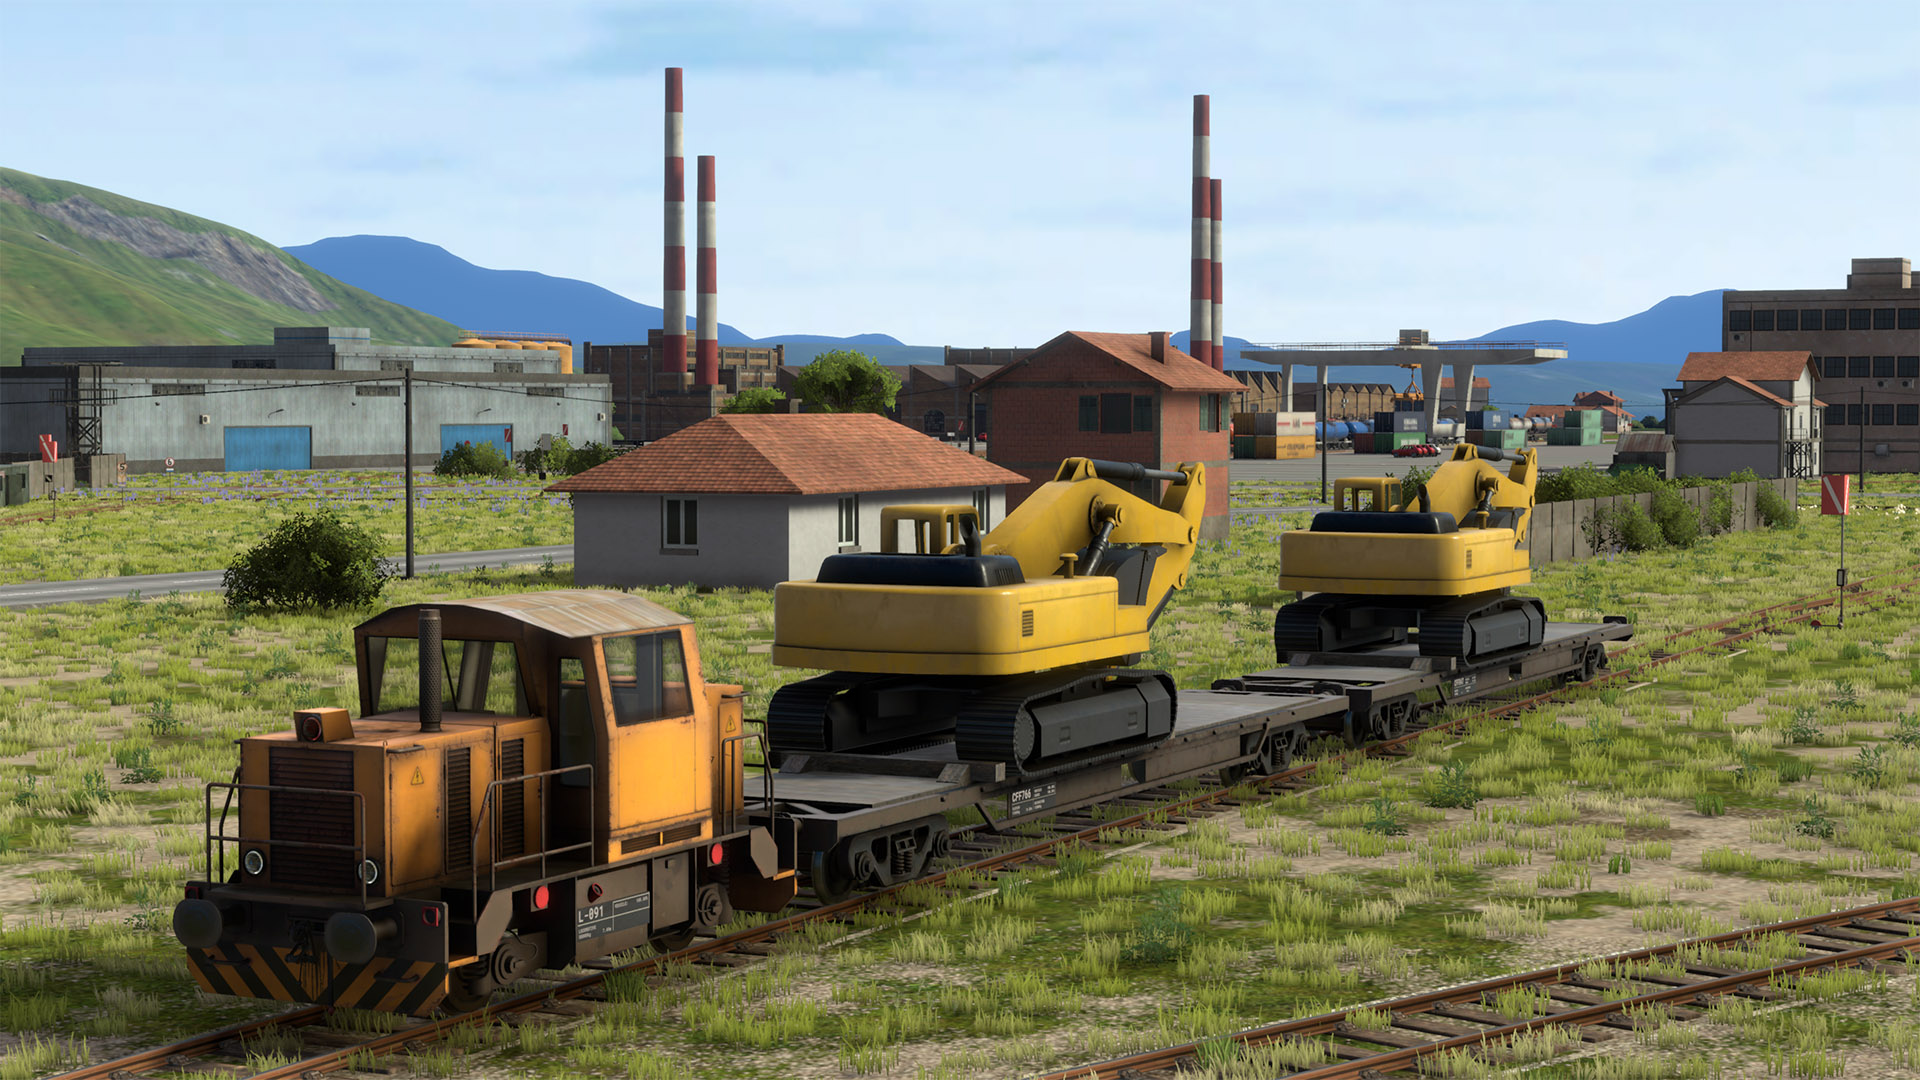 derailvalley-train-shunter-excavators-rural-4k.jpg